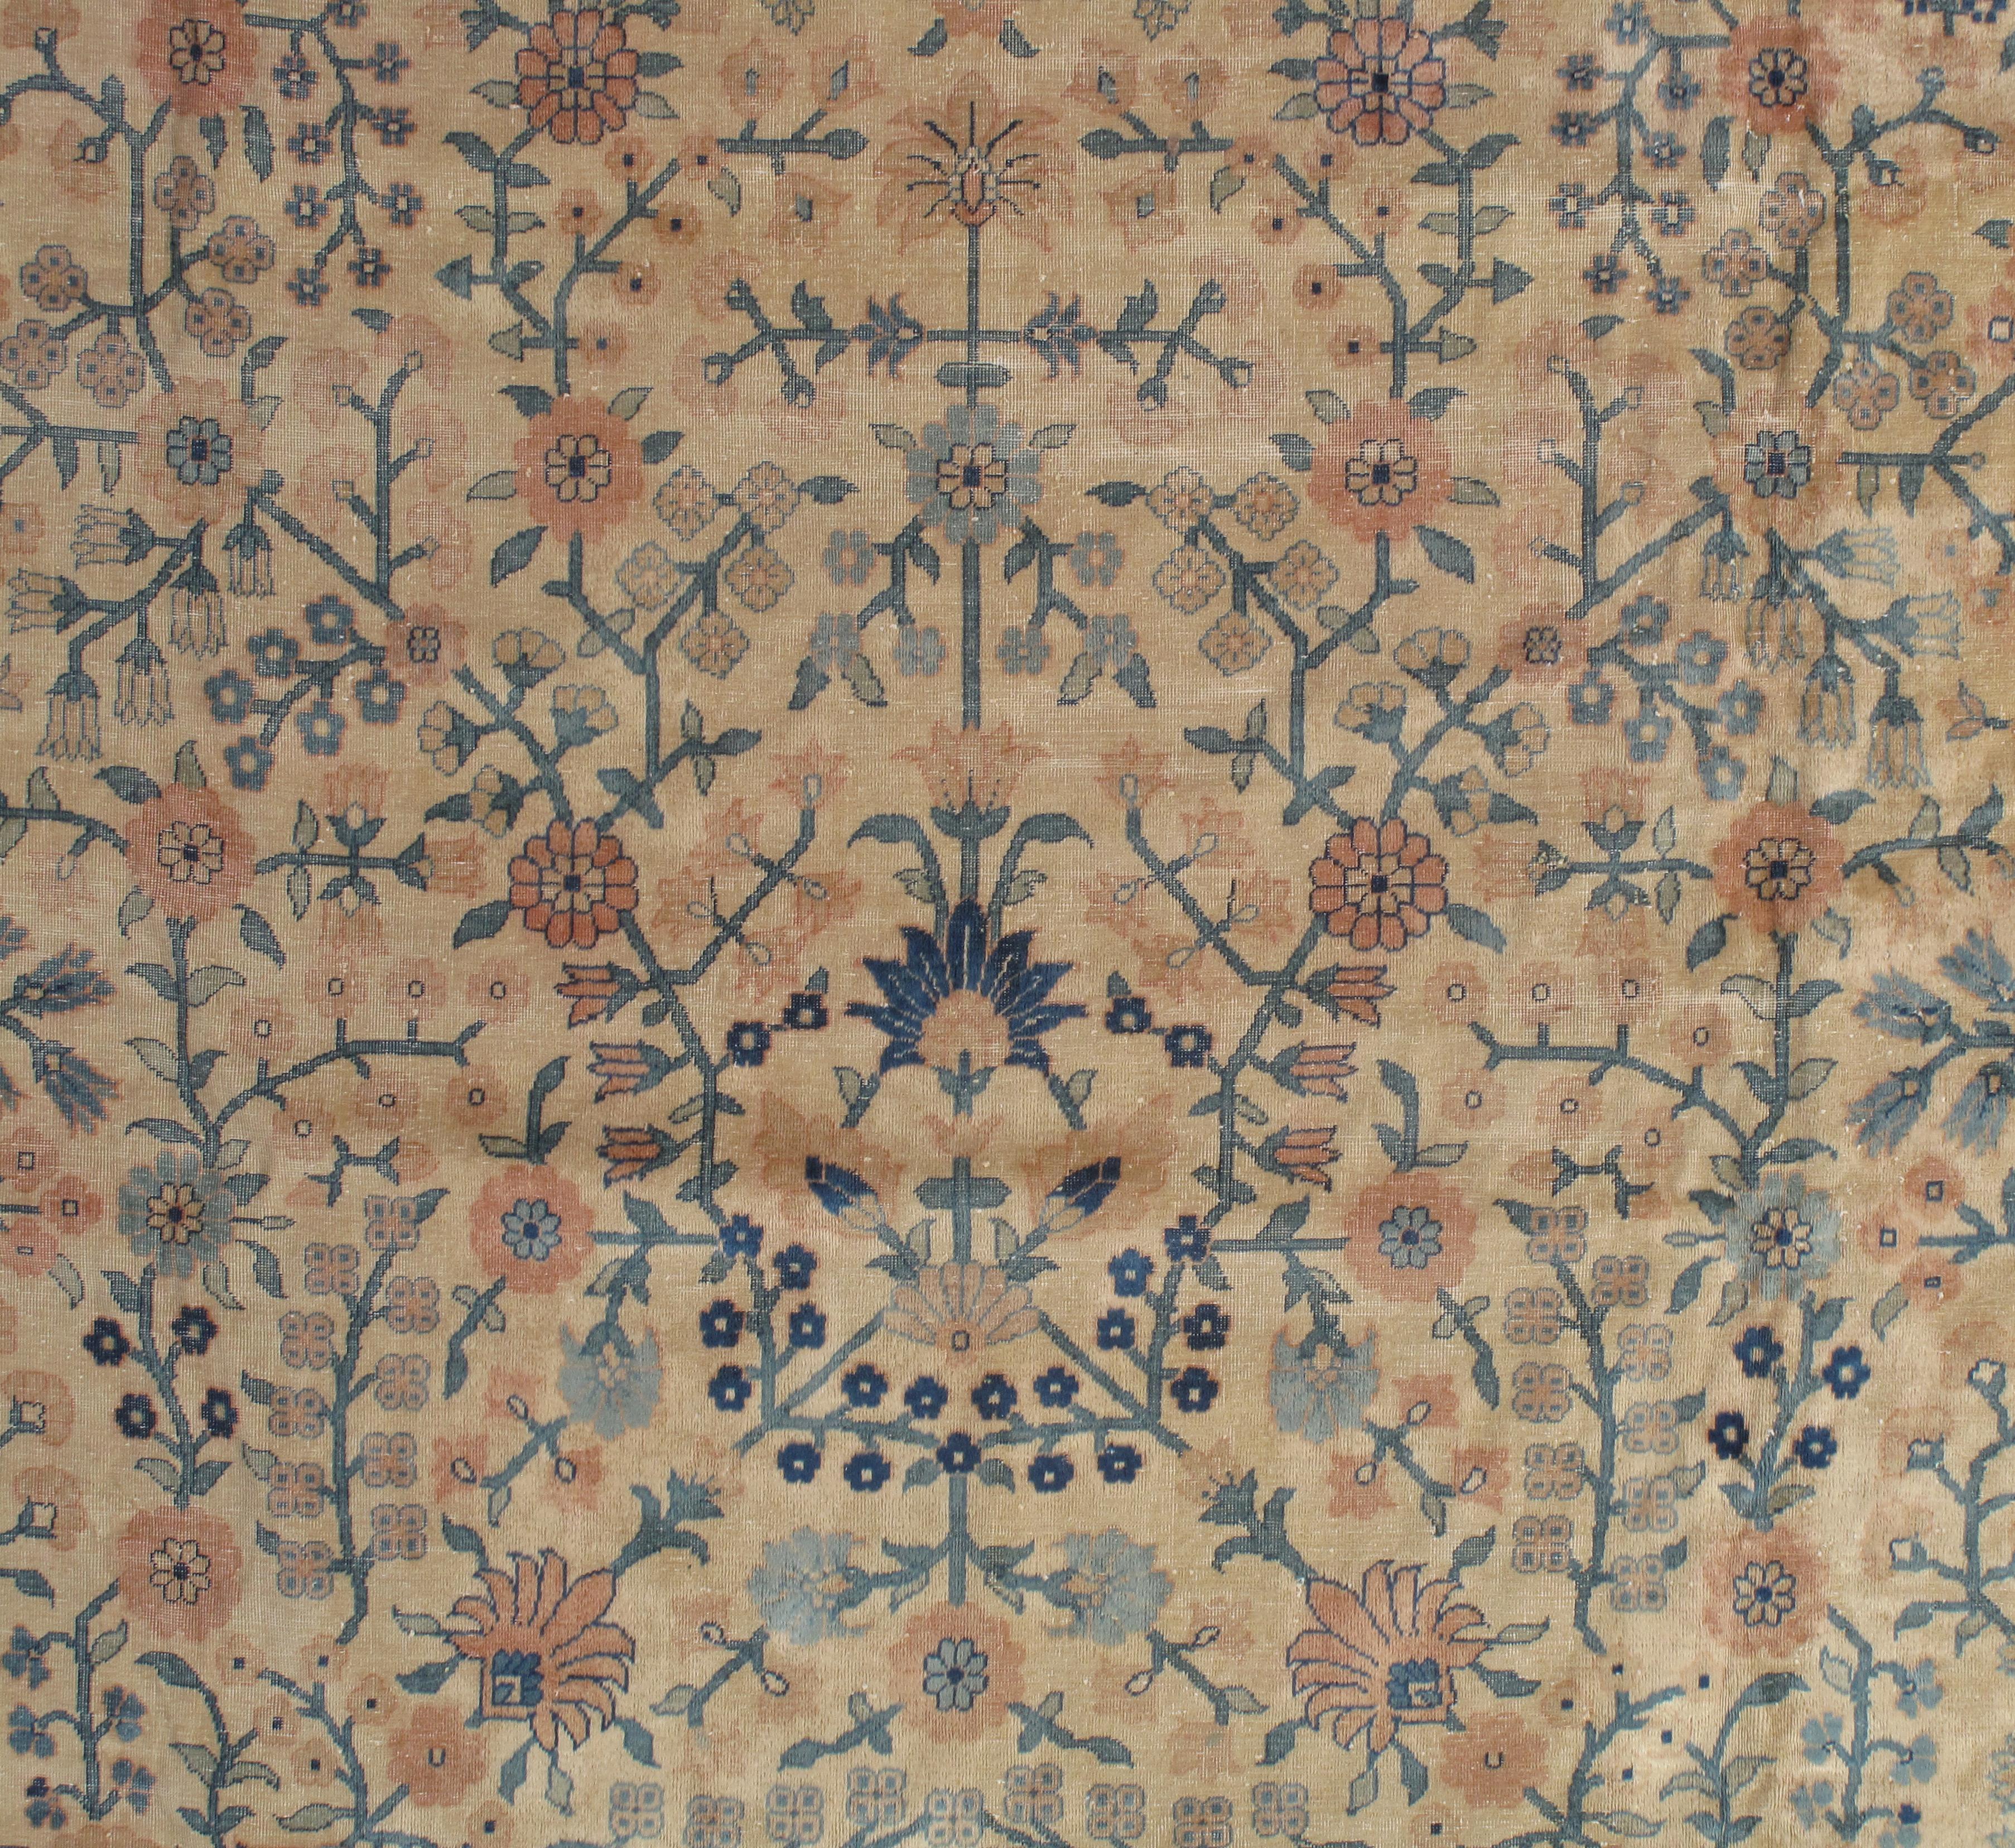 Tapis indien antique d'Amritsar. Cette pièce a été tissée en Inde à partir d'un motif persan Mahal dans les années 1910. Fond beige avec un magnifique motif floral. Taille : 10' x 15'.